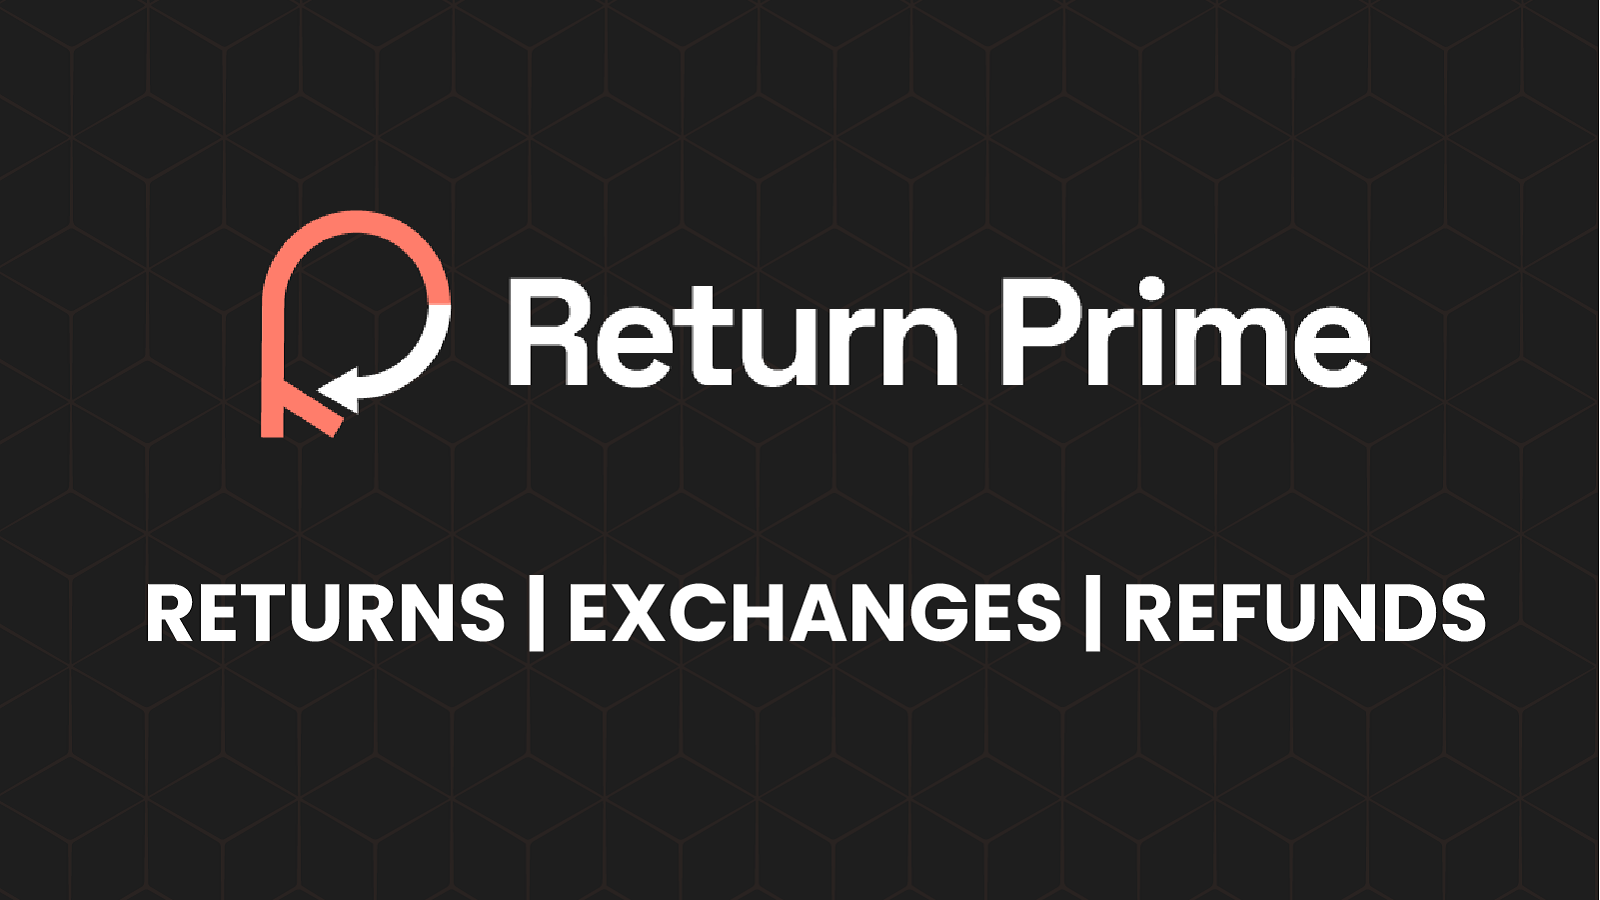 Return Prime - Return Management Software